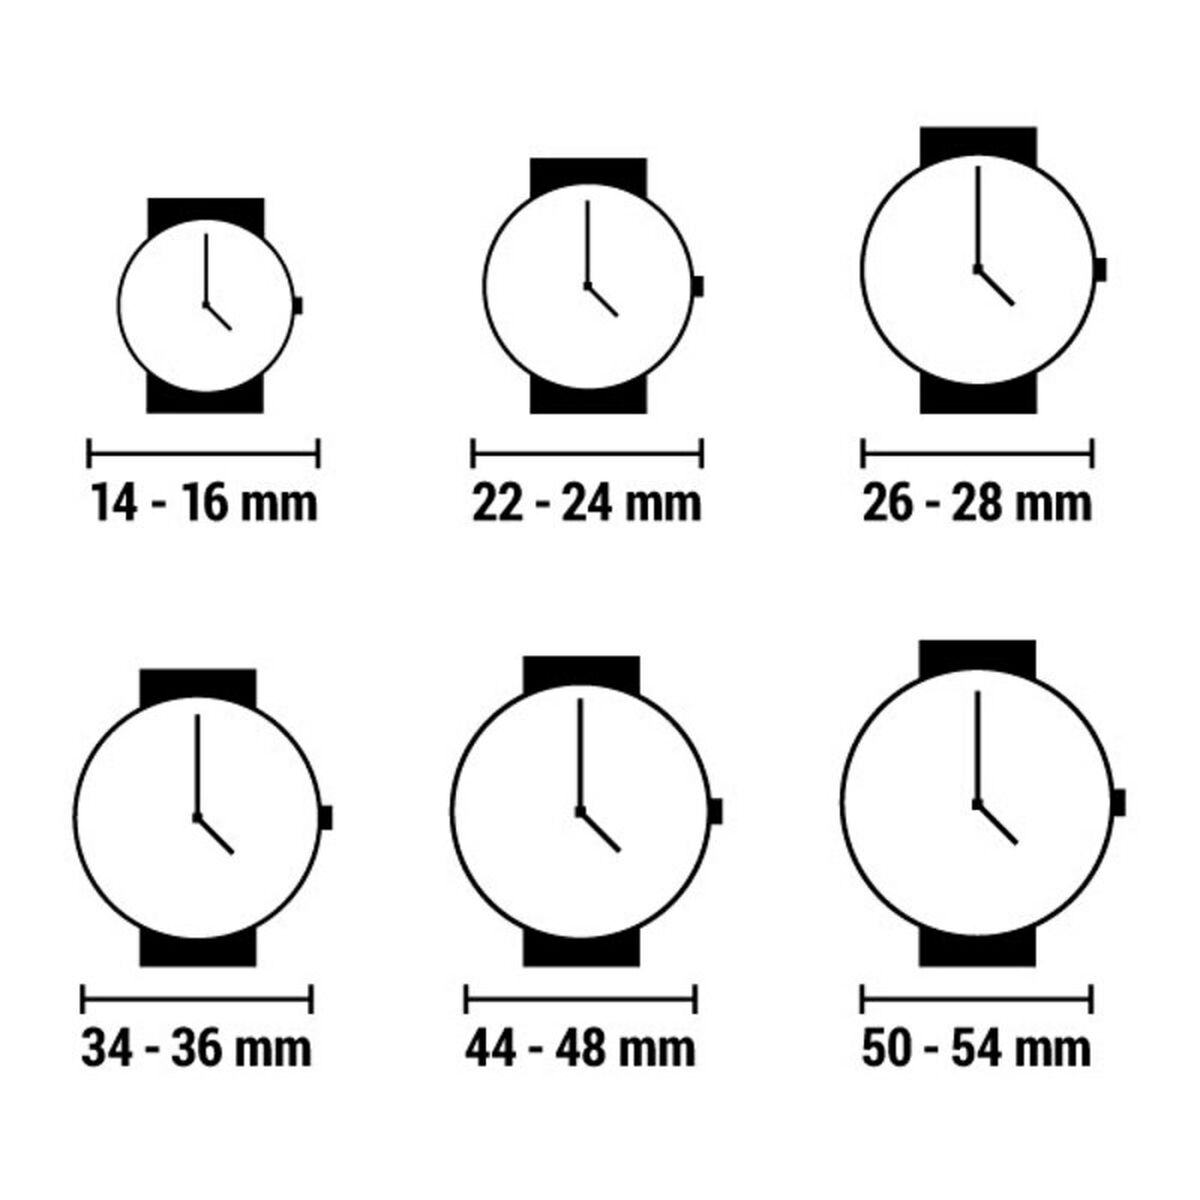 Horloge Heren Kenneth Cole IKC8095 (Ø 44 mm)